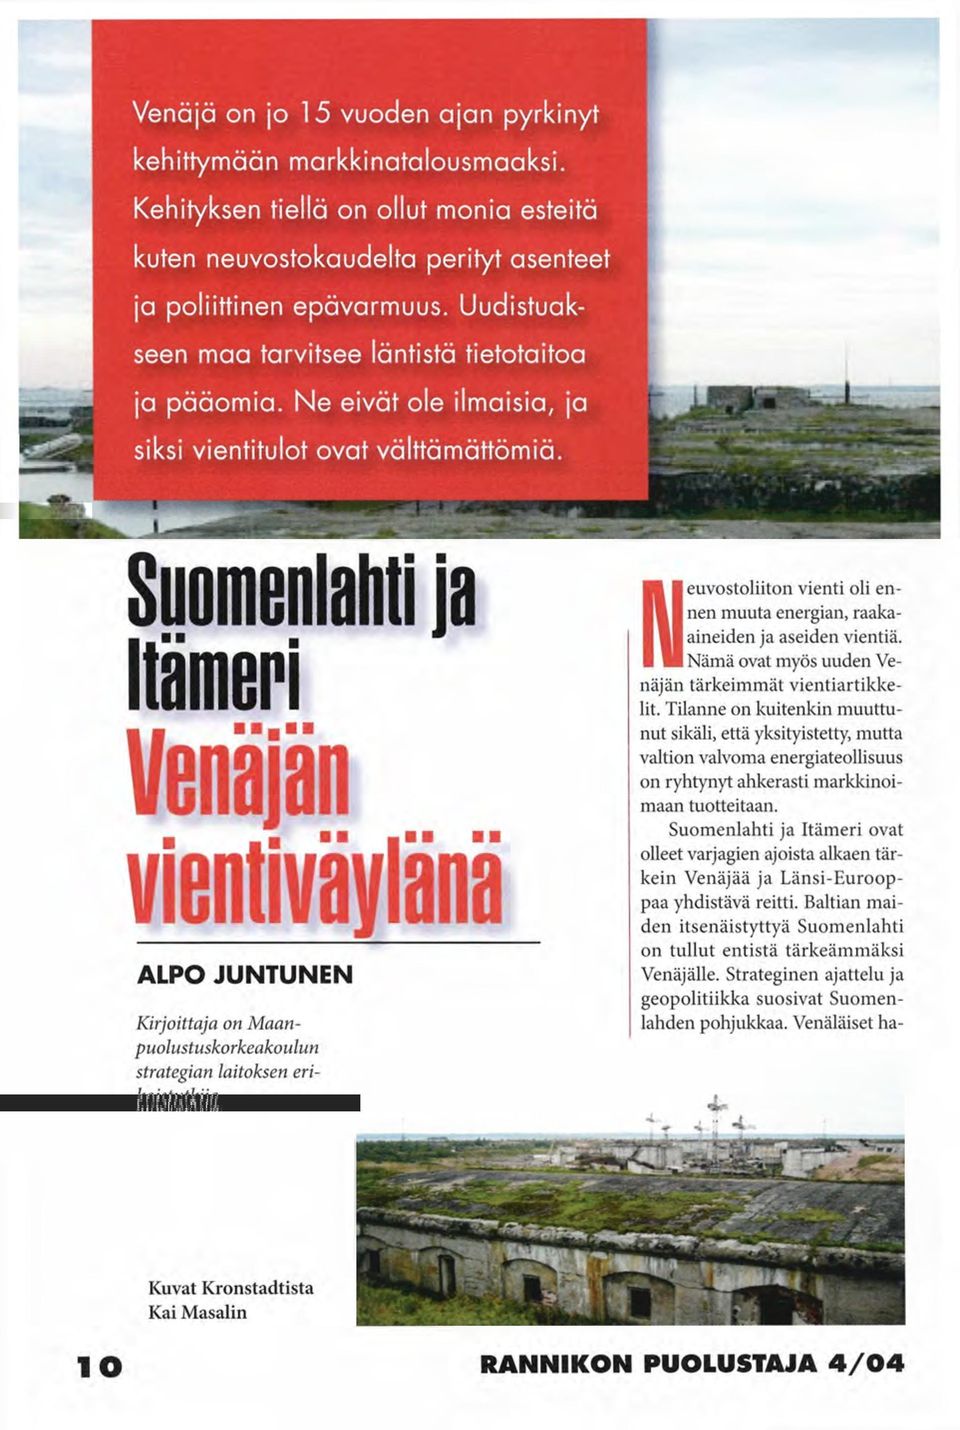 Suomenlahti ja Itämeri Venäjän vientivaylana ALPO JUNTUNEN Kirjoittaja on Maanpuolustuskorkeakoulun strategian laitoksen erikoistutkija.